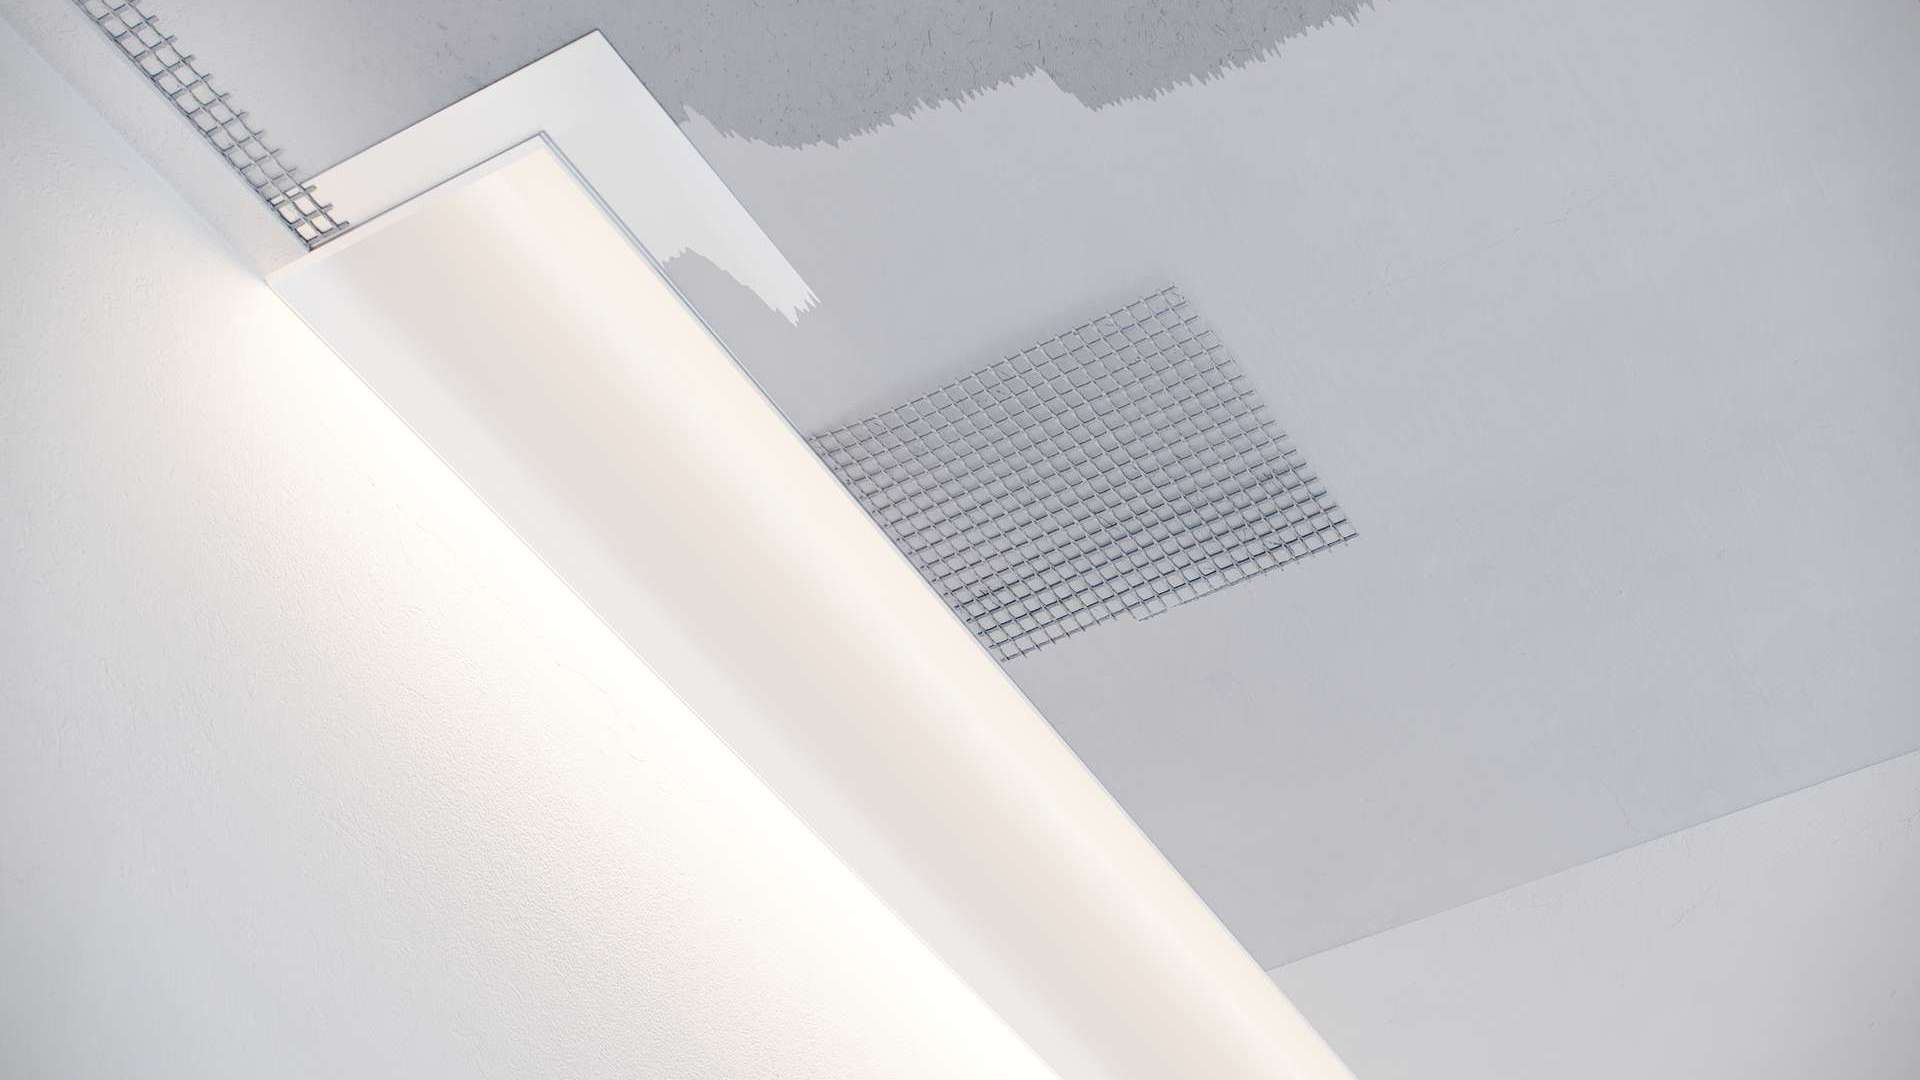 Profil LED LUMINES typ Pero srebrny anodowany 3 m